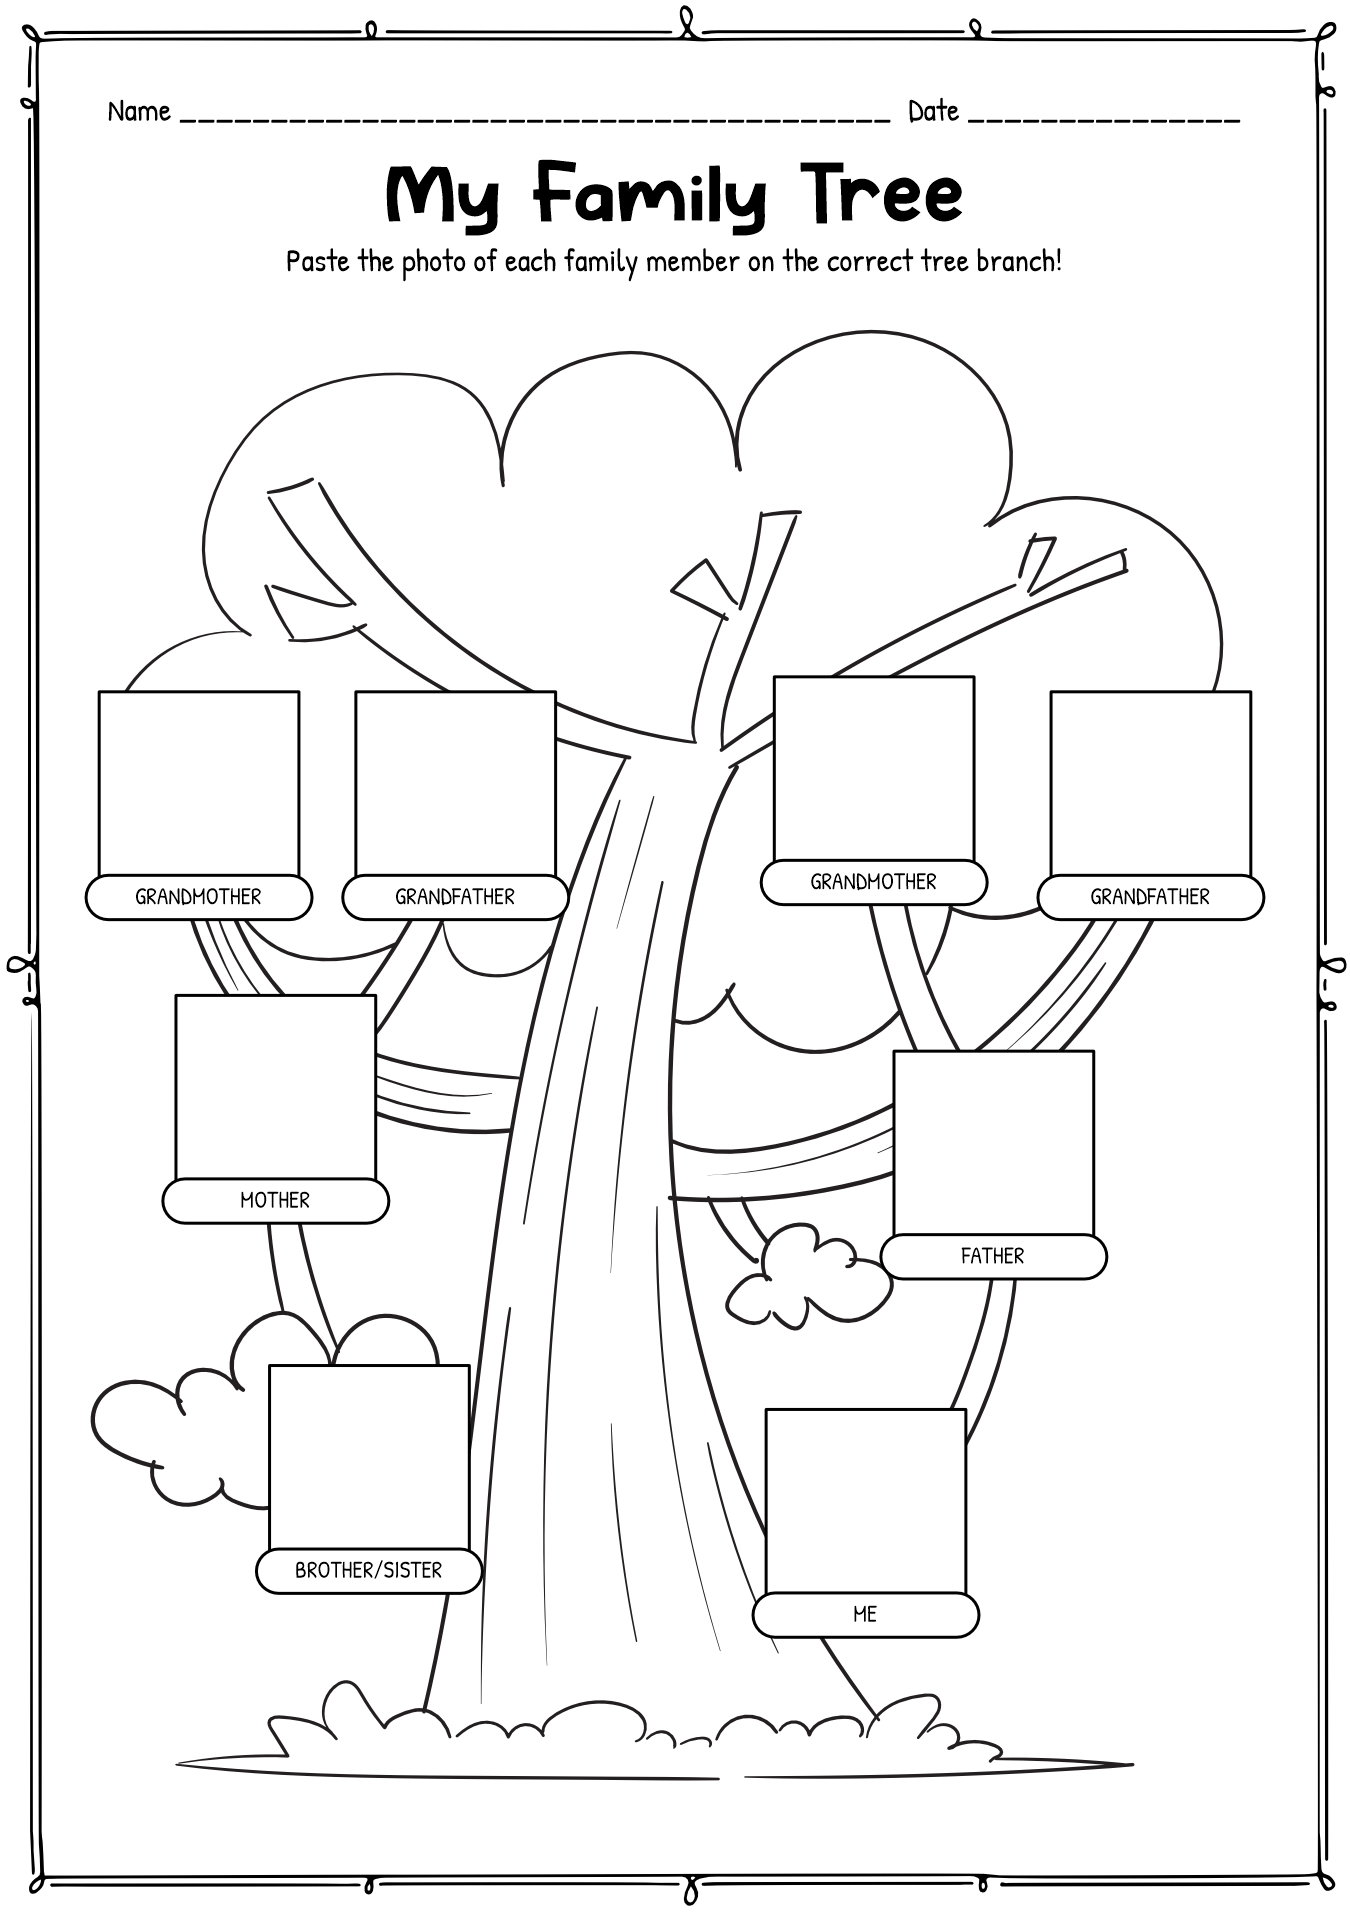 15-best-images-of-family-tree-worksheet-kindergarten-my-family